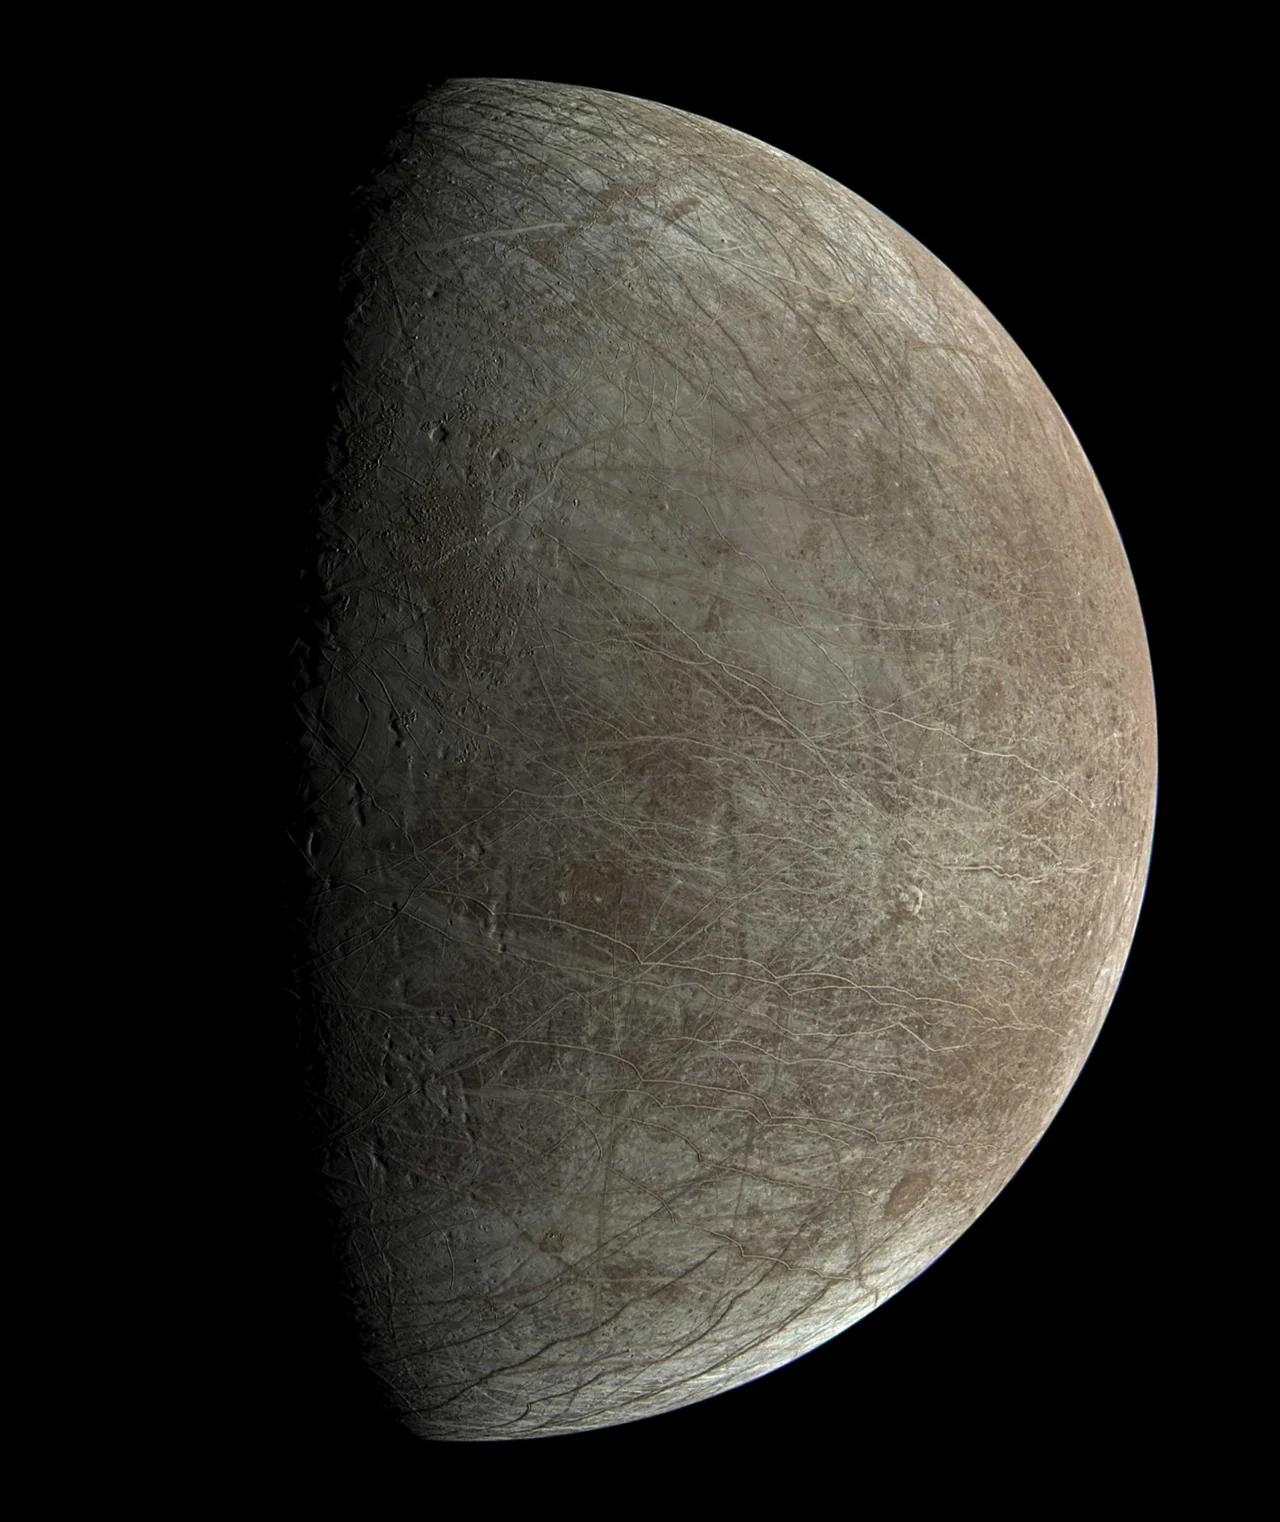 Europa Juno 1-pia-25334a-europa-bjorn-juno pj45 001 11 approx true color